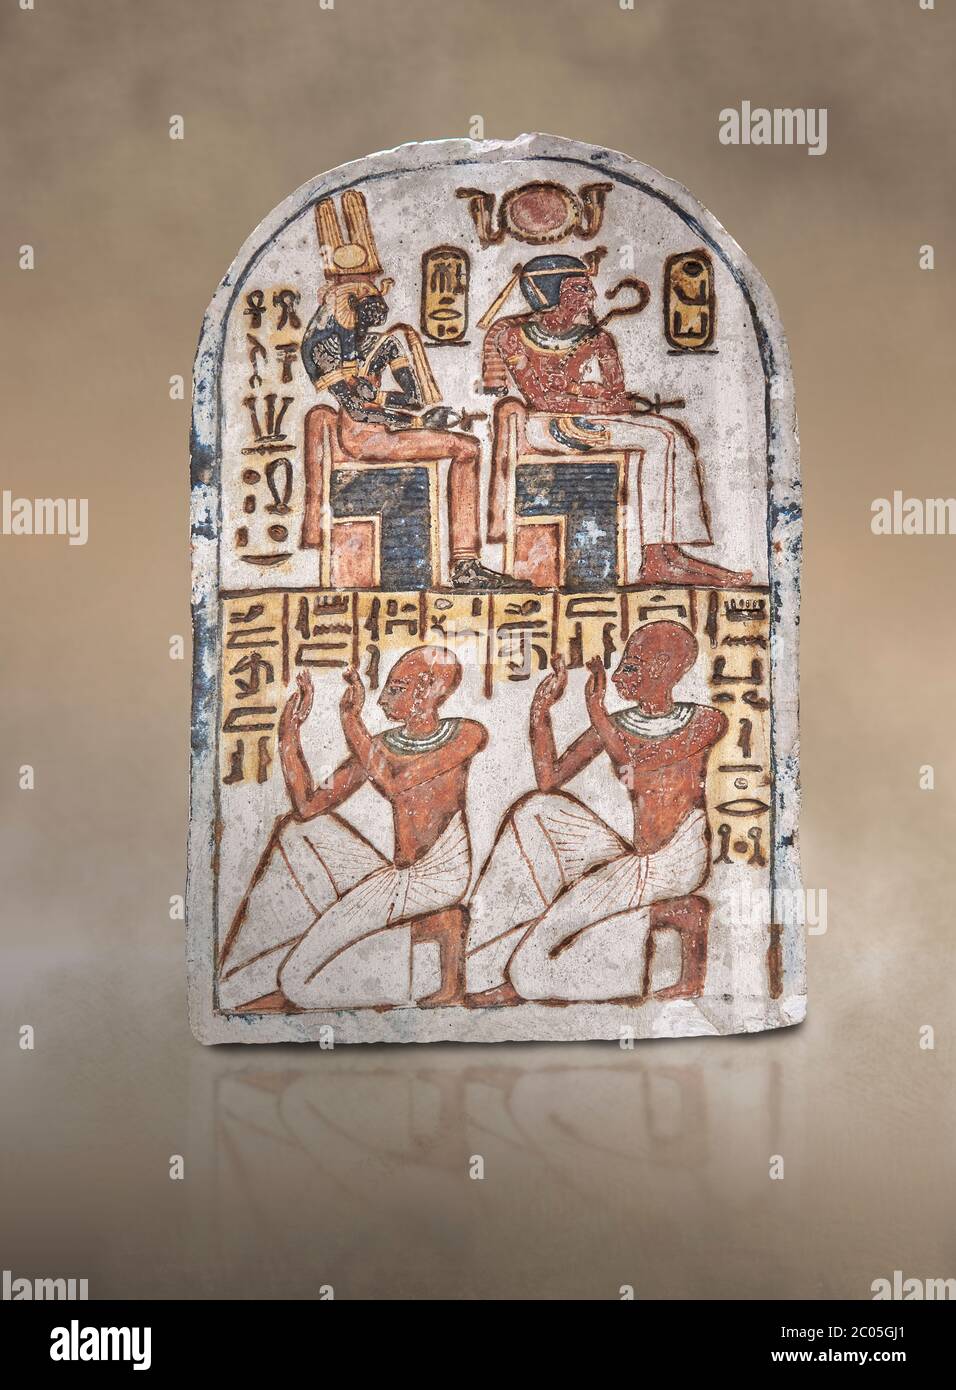 Alte ägyptische Stele von Amenemope Amenhotep I und Ahmose-Nefertari, Kalkstein, Neues Königreich, 19. Dynastie, (1279-1213 v. Chr.), Deir el-Medingewidmet Stockfoto